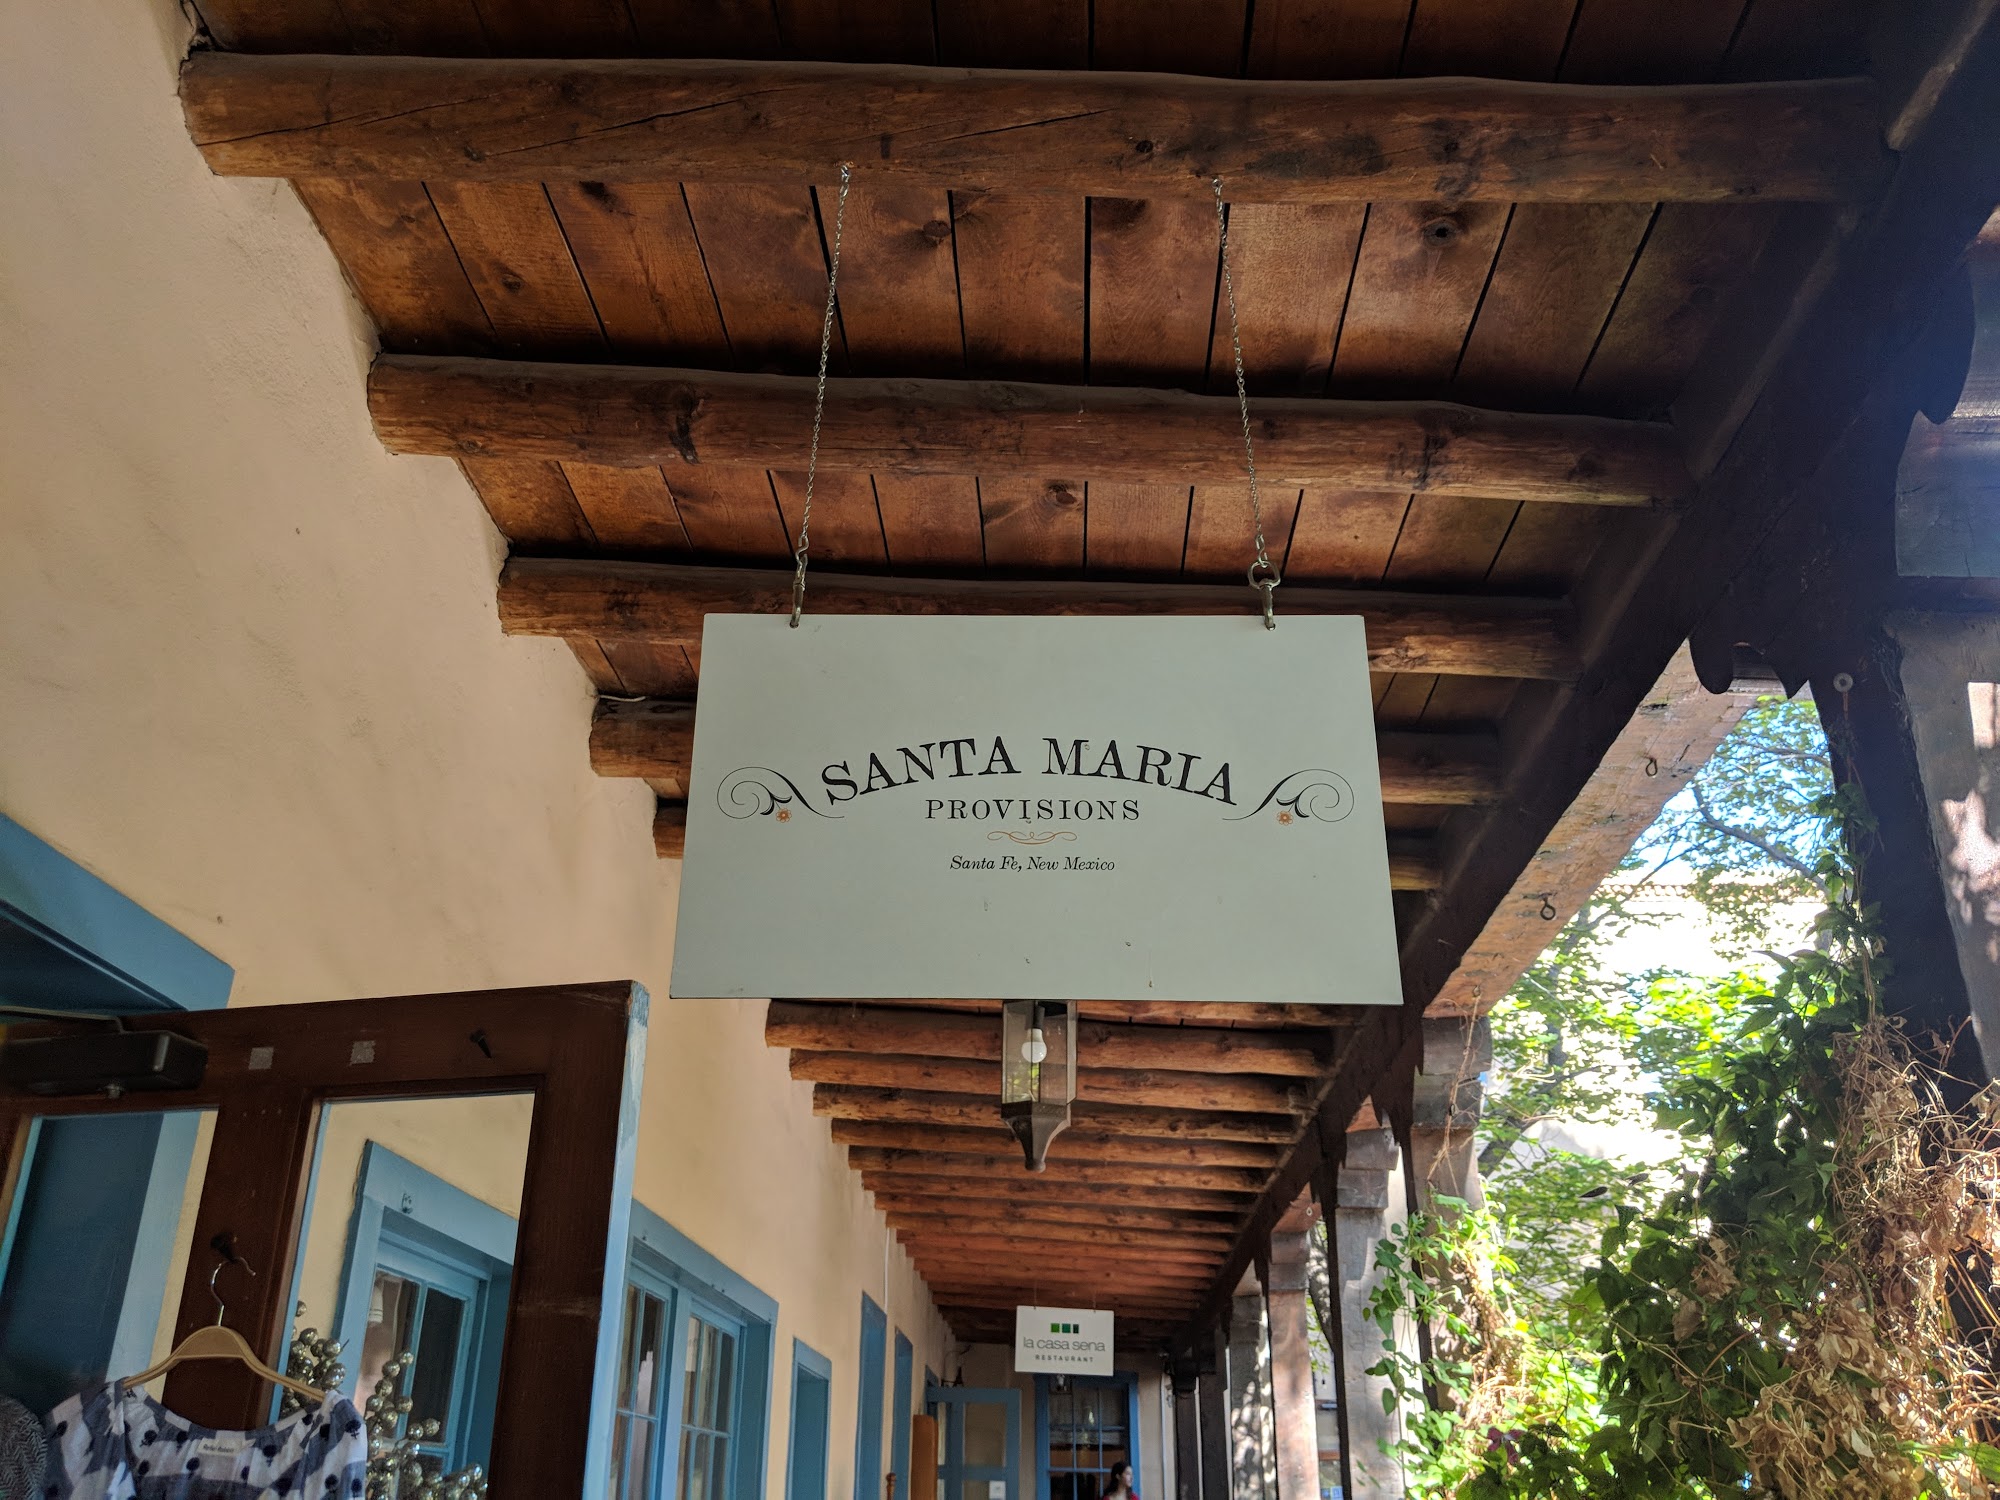 Santa Maria Provisions